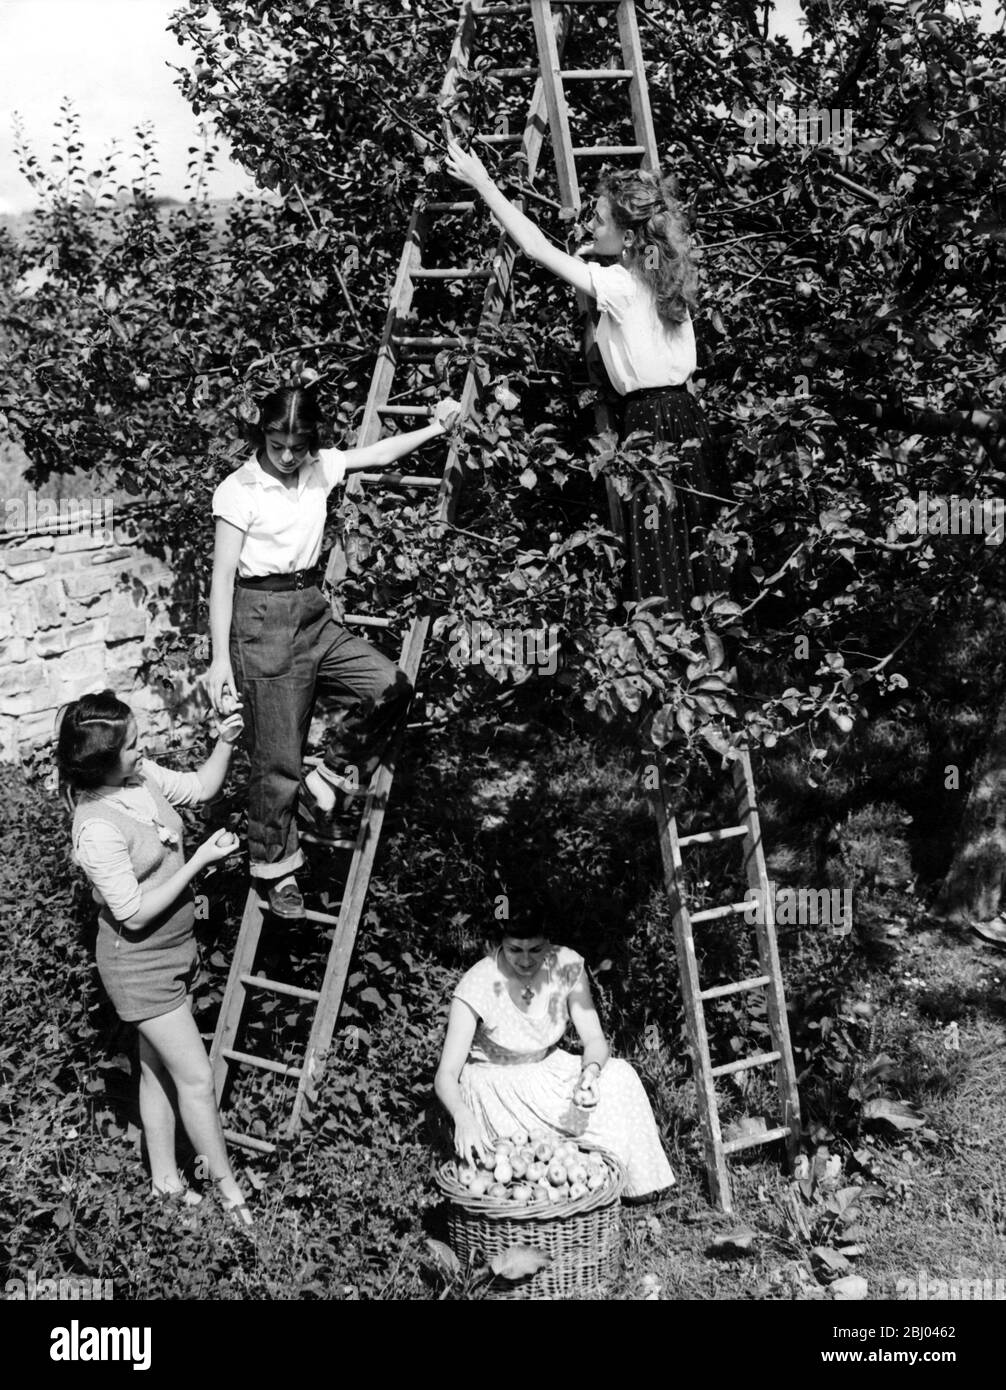 Les étudiants en vacances de travail cueillir des pommes dans un vergers d'Essex. De gauche à droite, les filles sont Gladys Kafka (16) de Tchécoslovaquie (en short); Linda Keen (16) de Wembley (en échelle); Jany Philip (27) de France (plaçant des pommes dans le panier) et Giselle Plauche (22) également de France (cueillir des fruits en échelle). - 19 août 1953 Banque D'Images